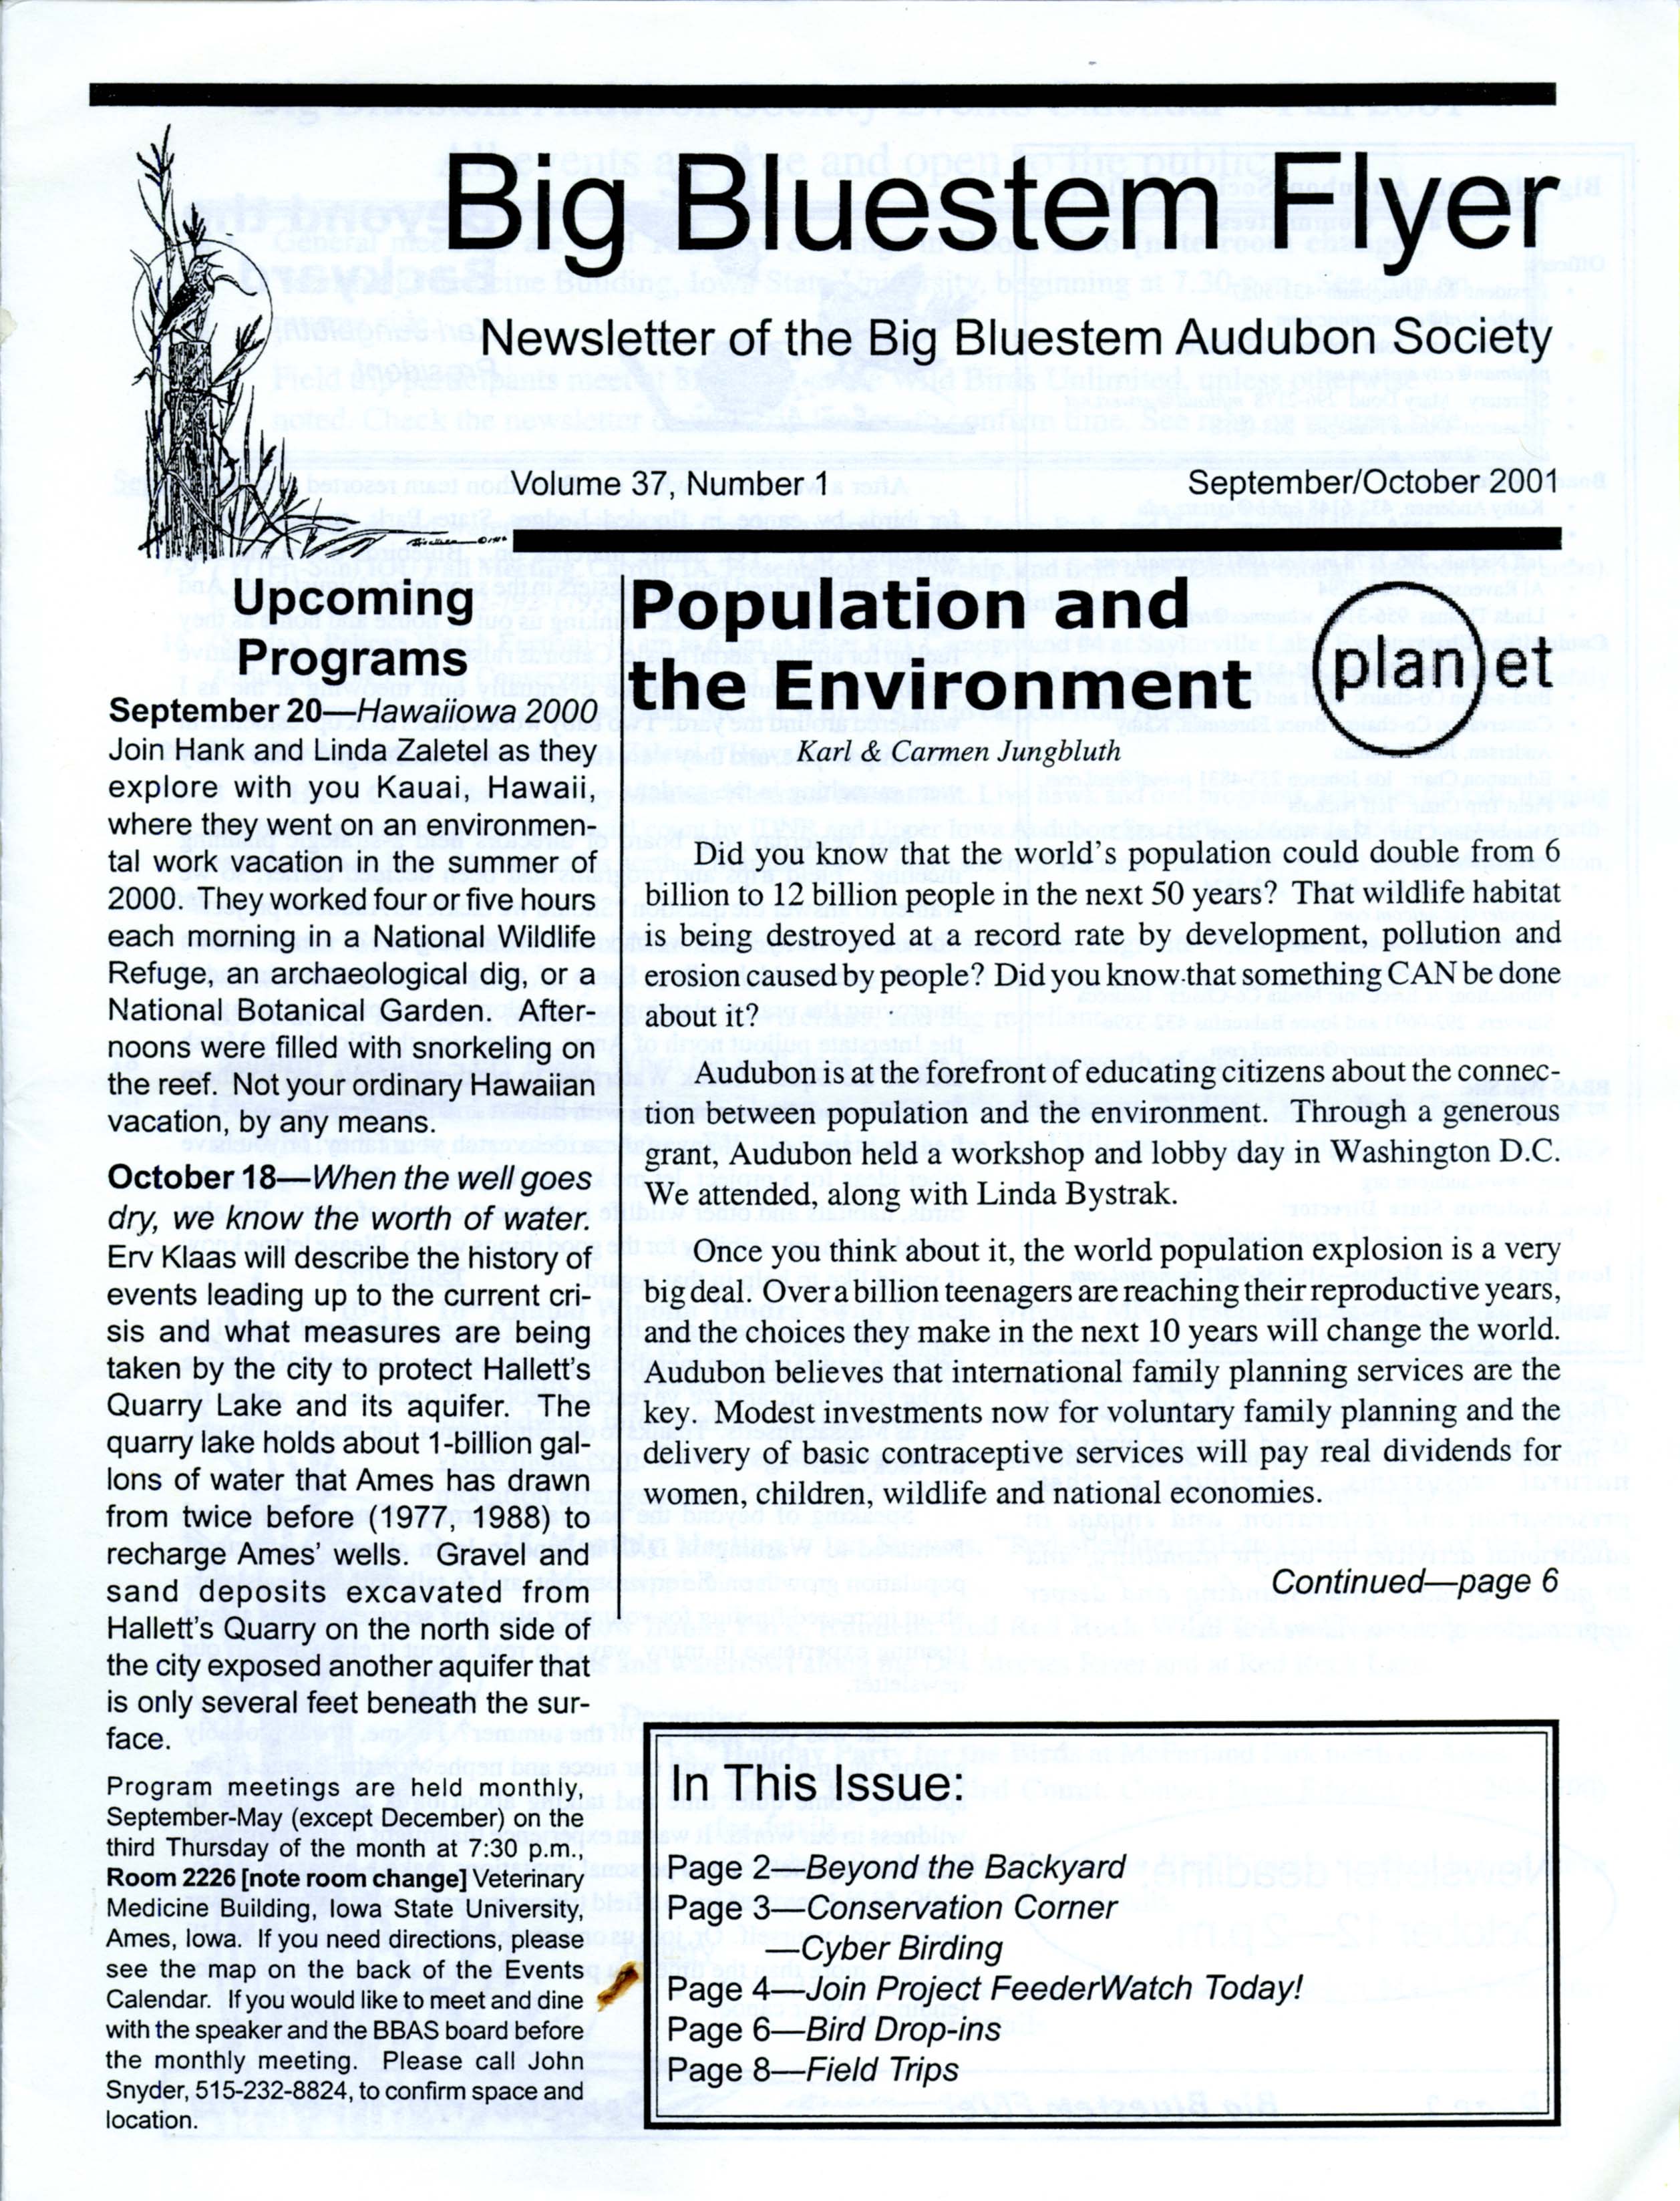 Big Bluestem Flyer, Volume 37, Number 1, September/October 2001